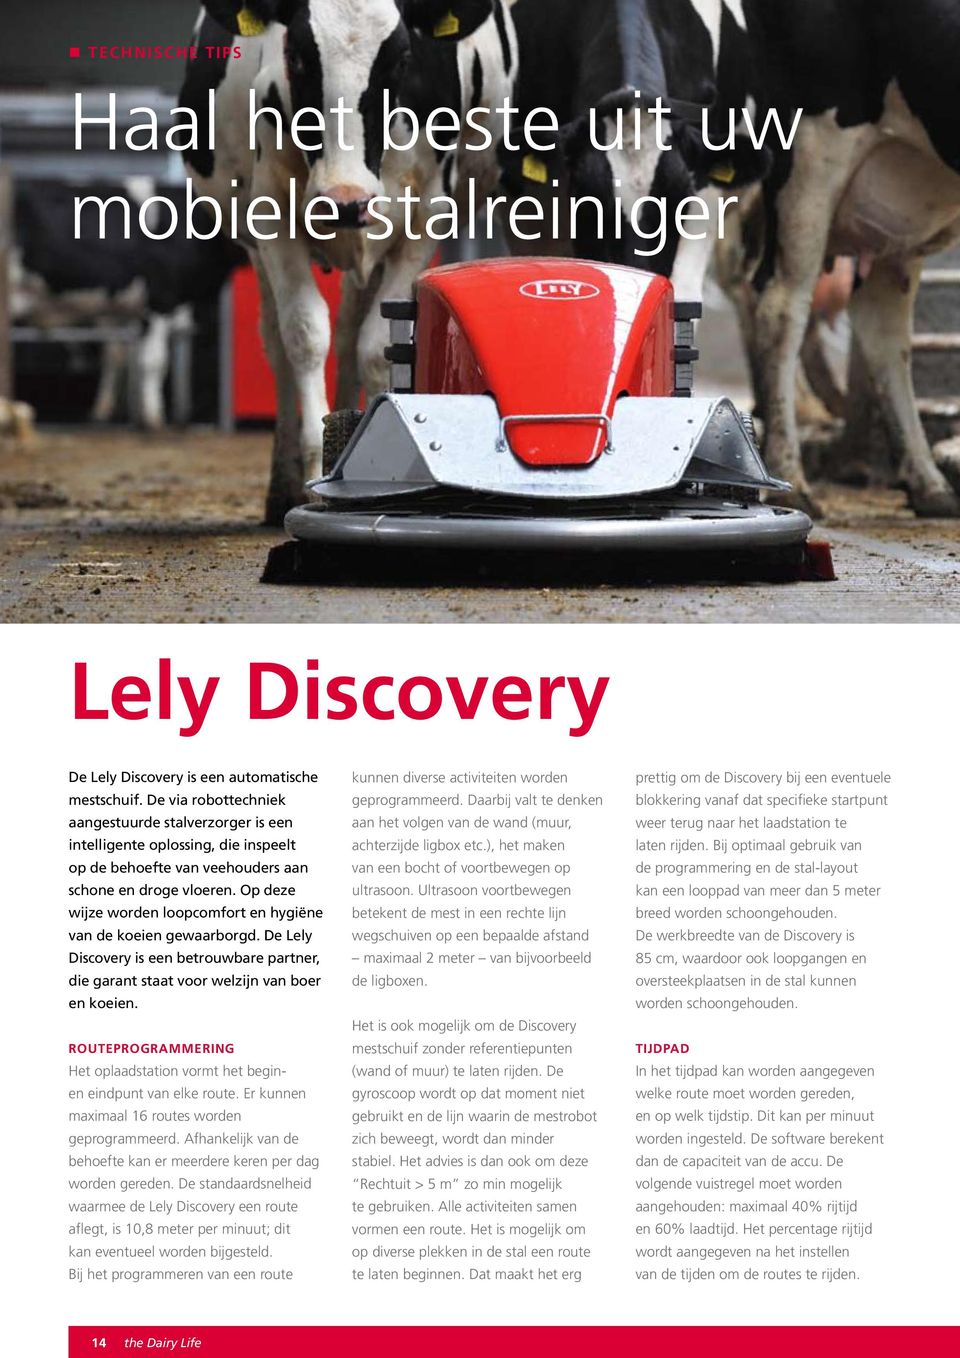 Op deze wijze worden loopcomfort en hygiëne van de koeien gewaarborgd. De Lely Discovery is een betrouwbare partner, die garant staat voor welzijn van boer en koeien.